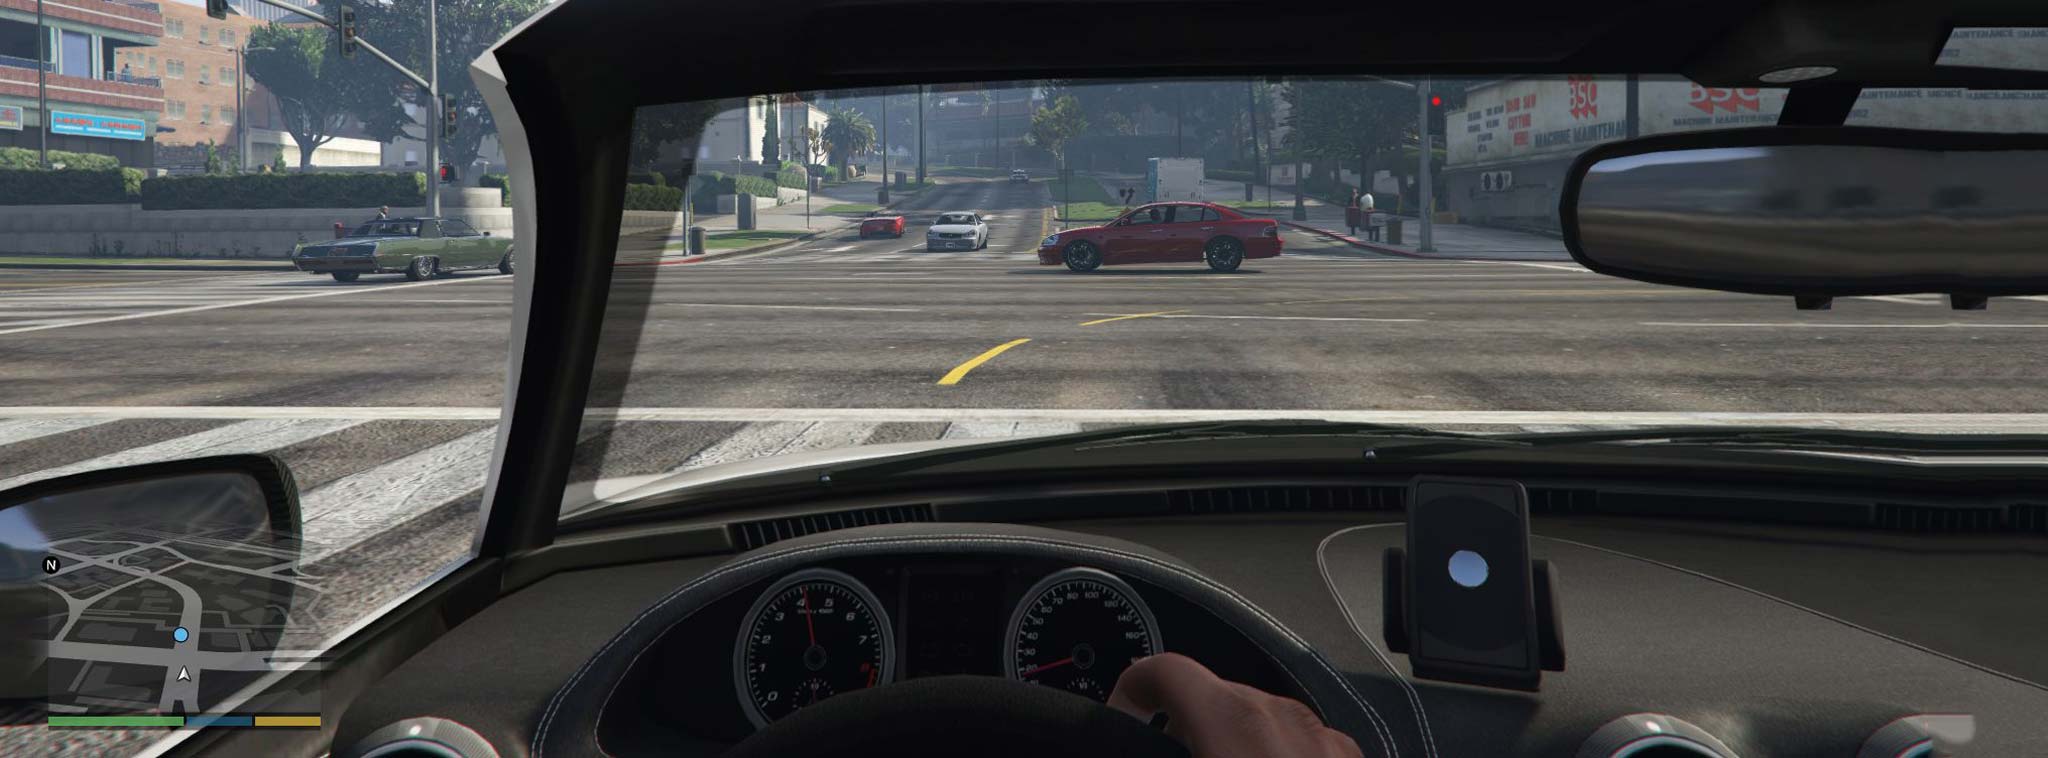 [Video] Trí tuệ nhân tạo học cách lái xe trong game GTA V